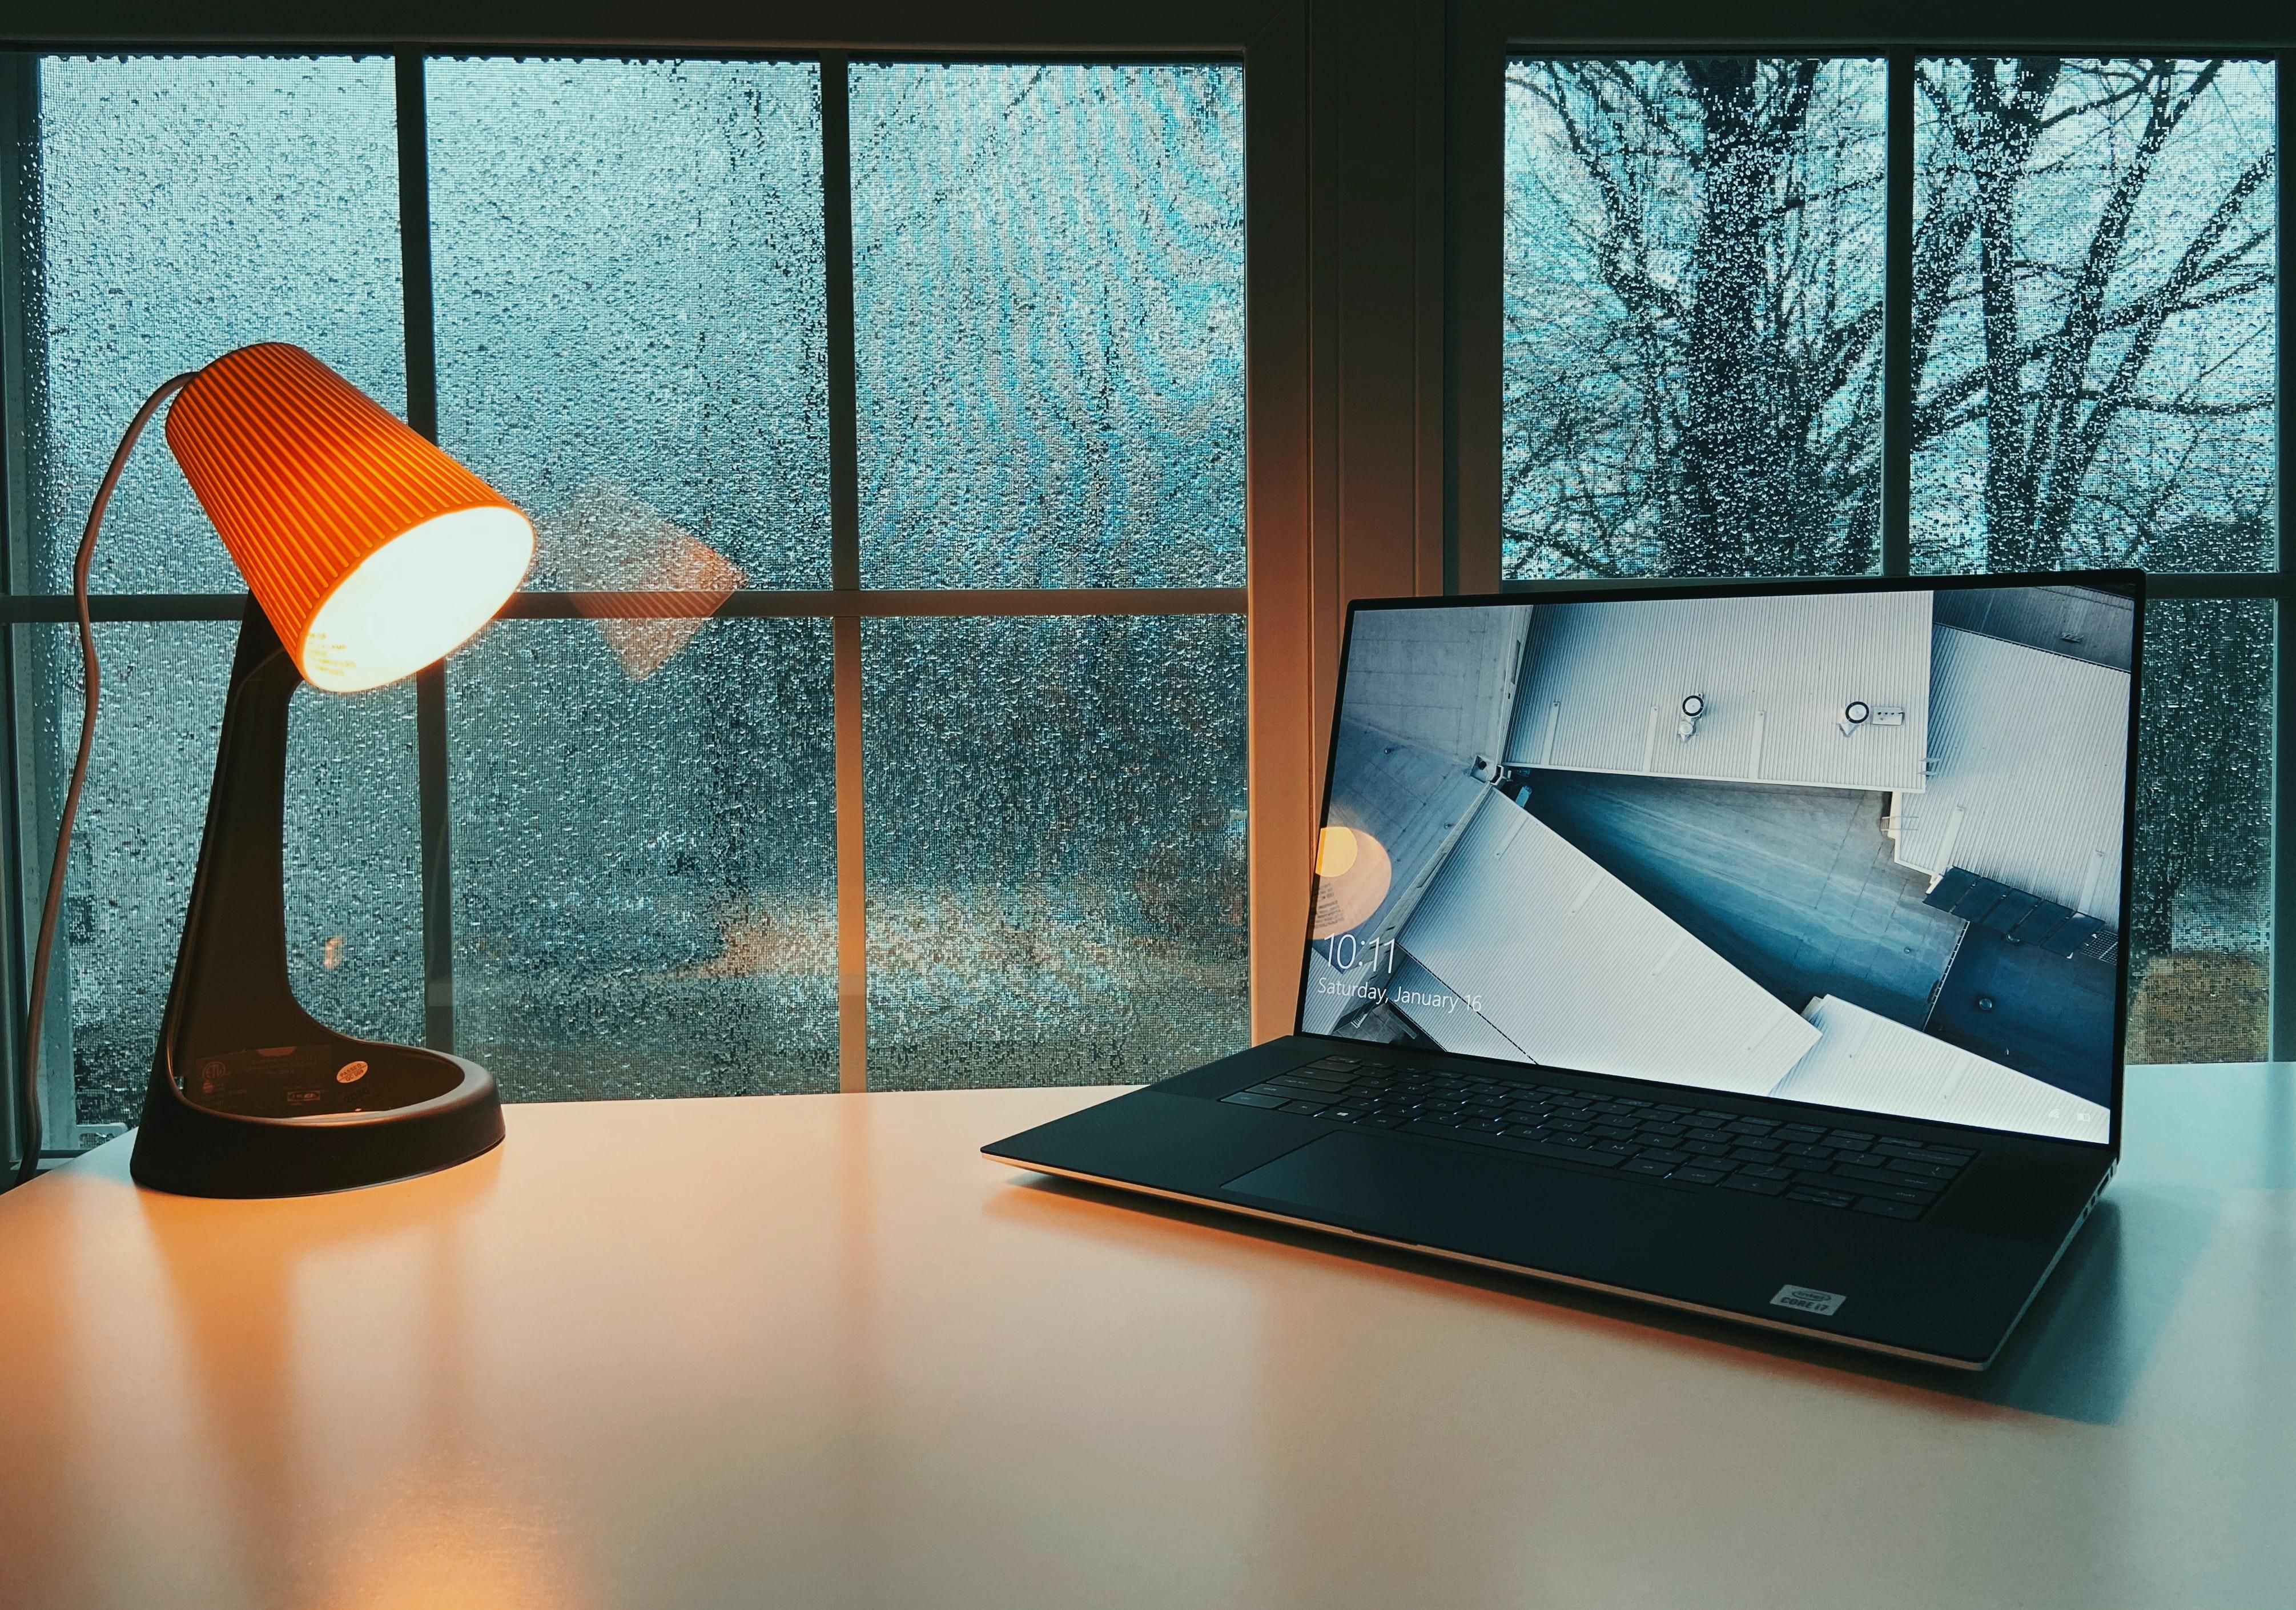 Egy narancssárga búrájú, fekete vázú asztali lámpa megvilágít egy fehér asztalt, amin egy laptop/PC található, az asztal egy ablak előtt van, kint esik az eső